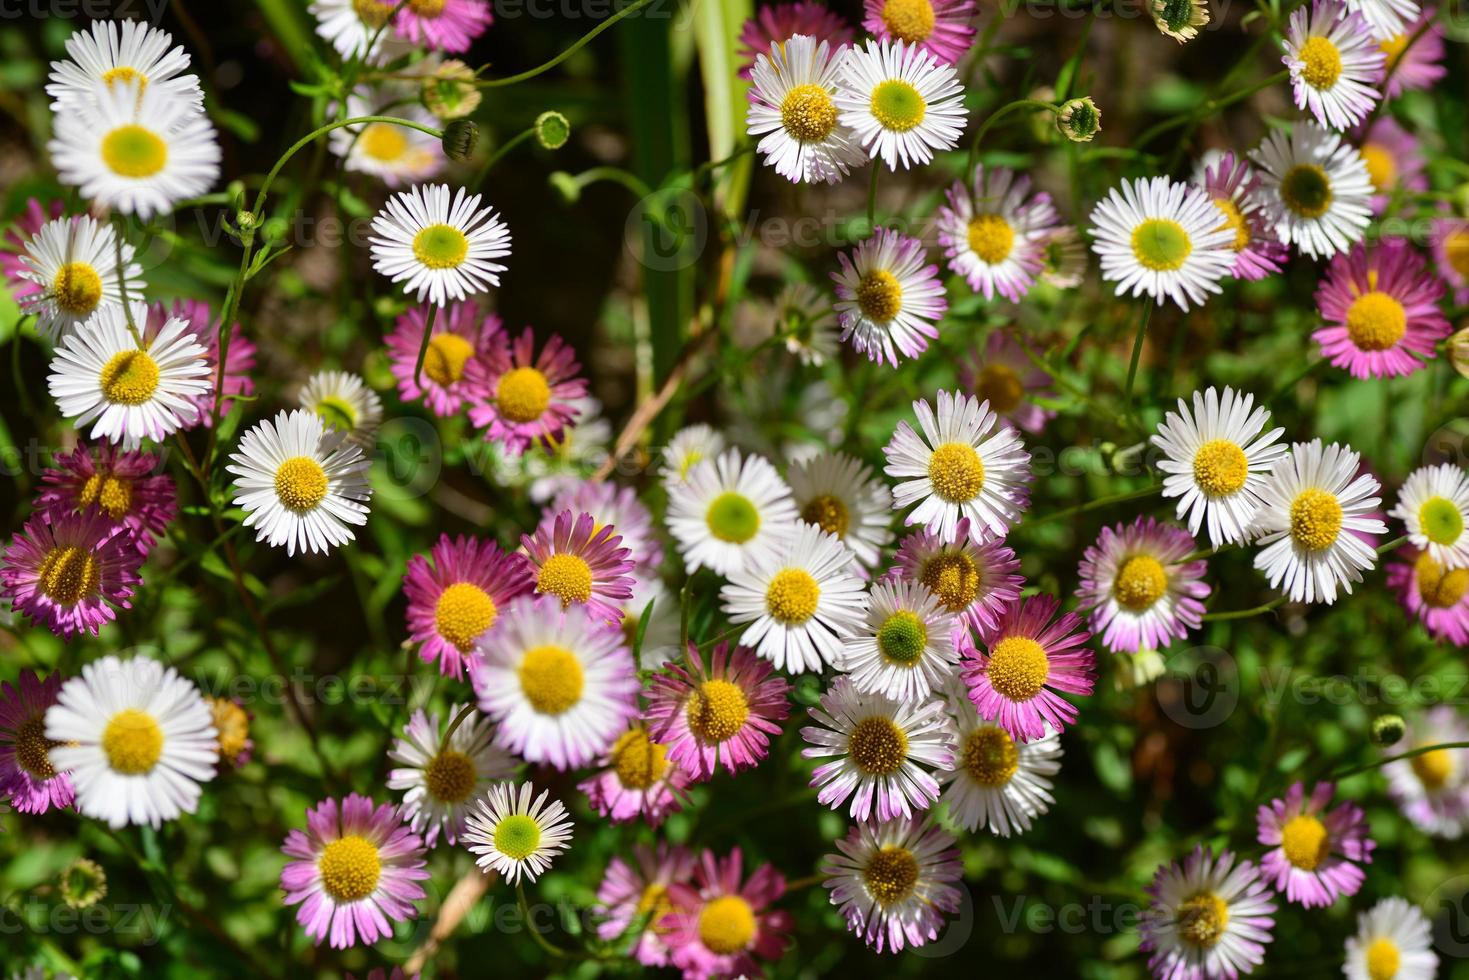 imagem macro do reino unido de jersey da margarida selvagem de flores da primavera foto